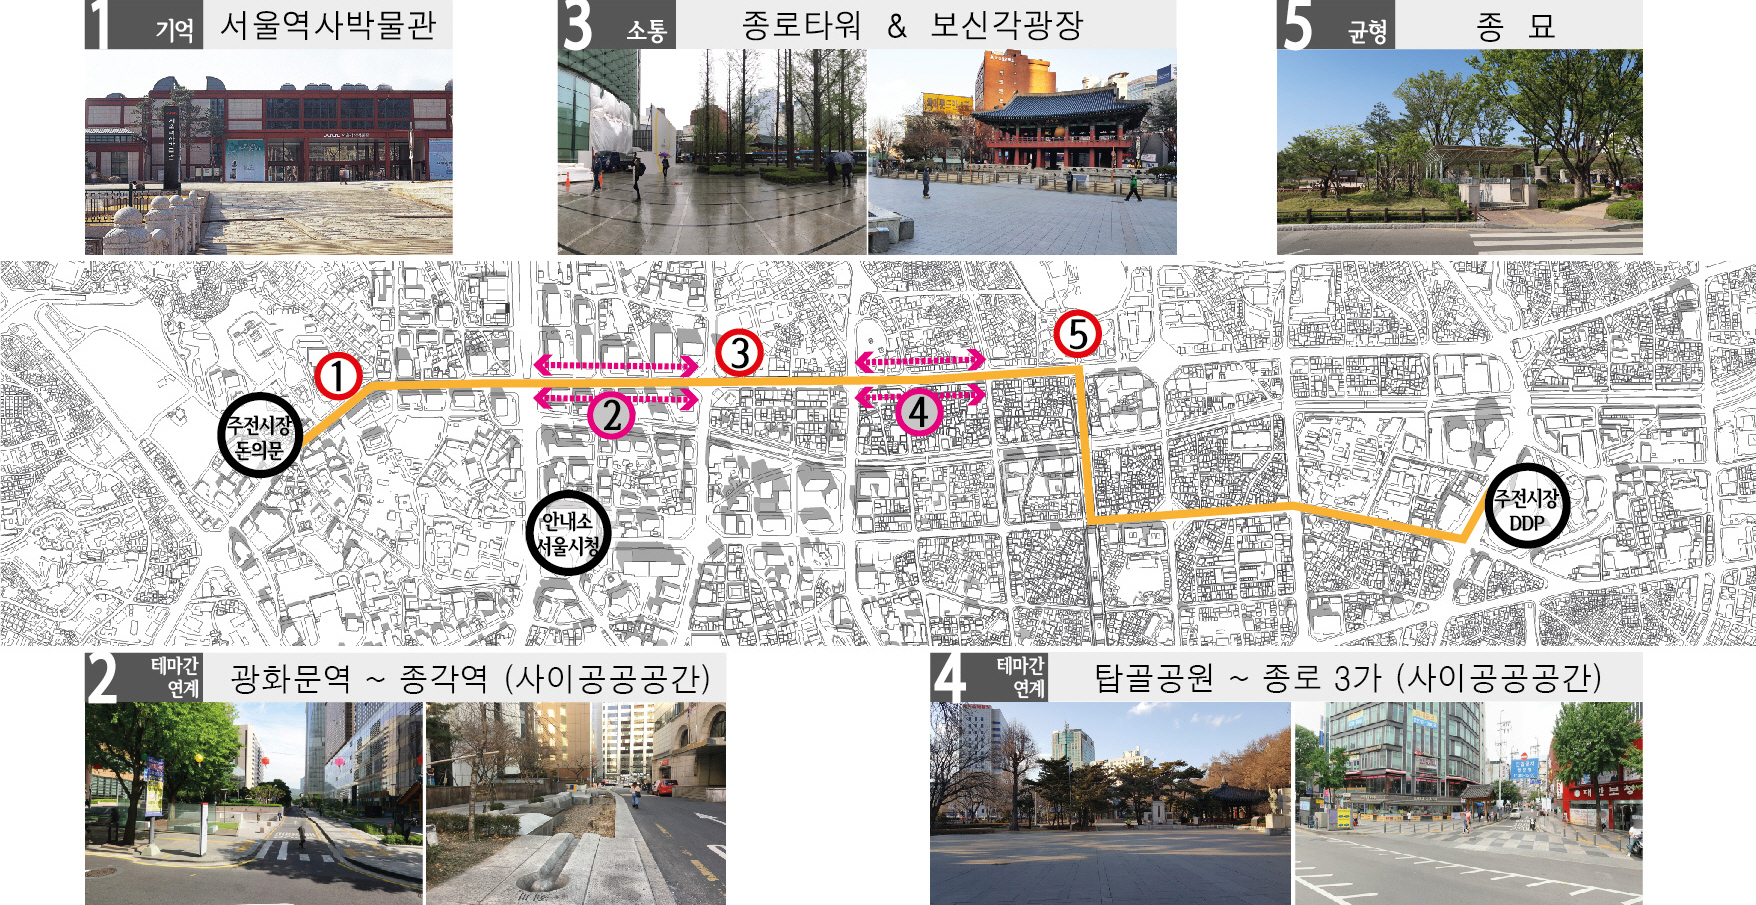 〔안정원의 디자인 칼럼〕 서울도시건축비엔날레의 서울, 건축과 디자인의 만남 속으로